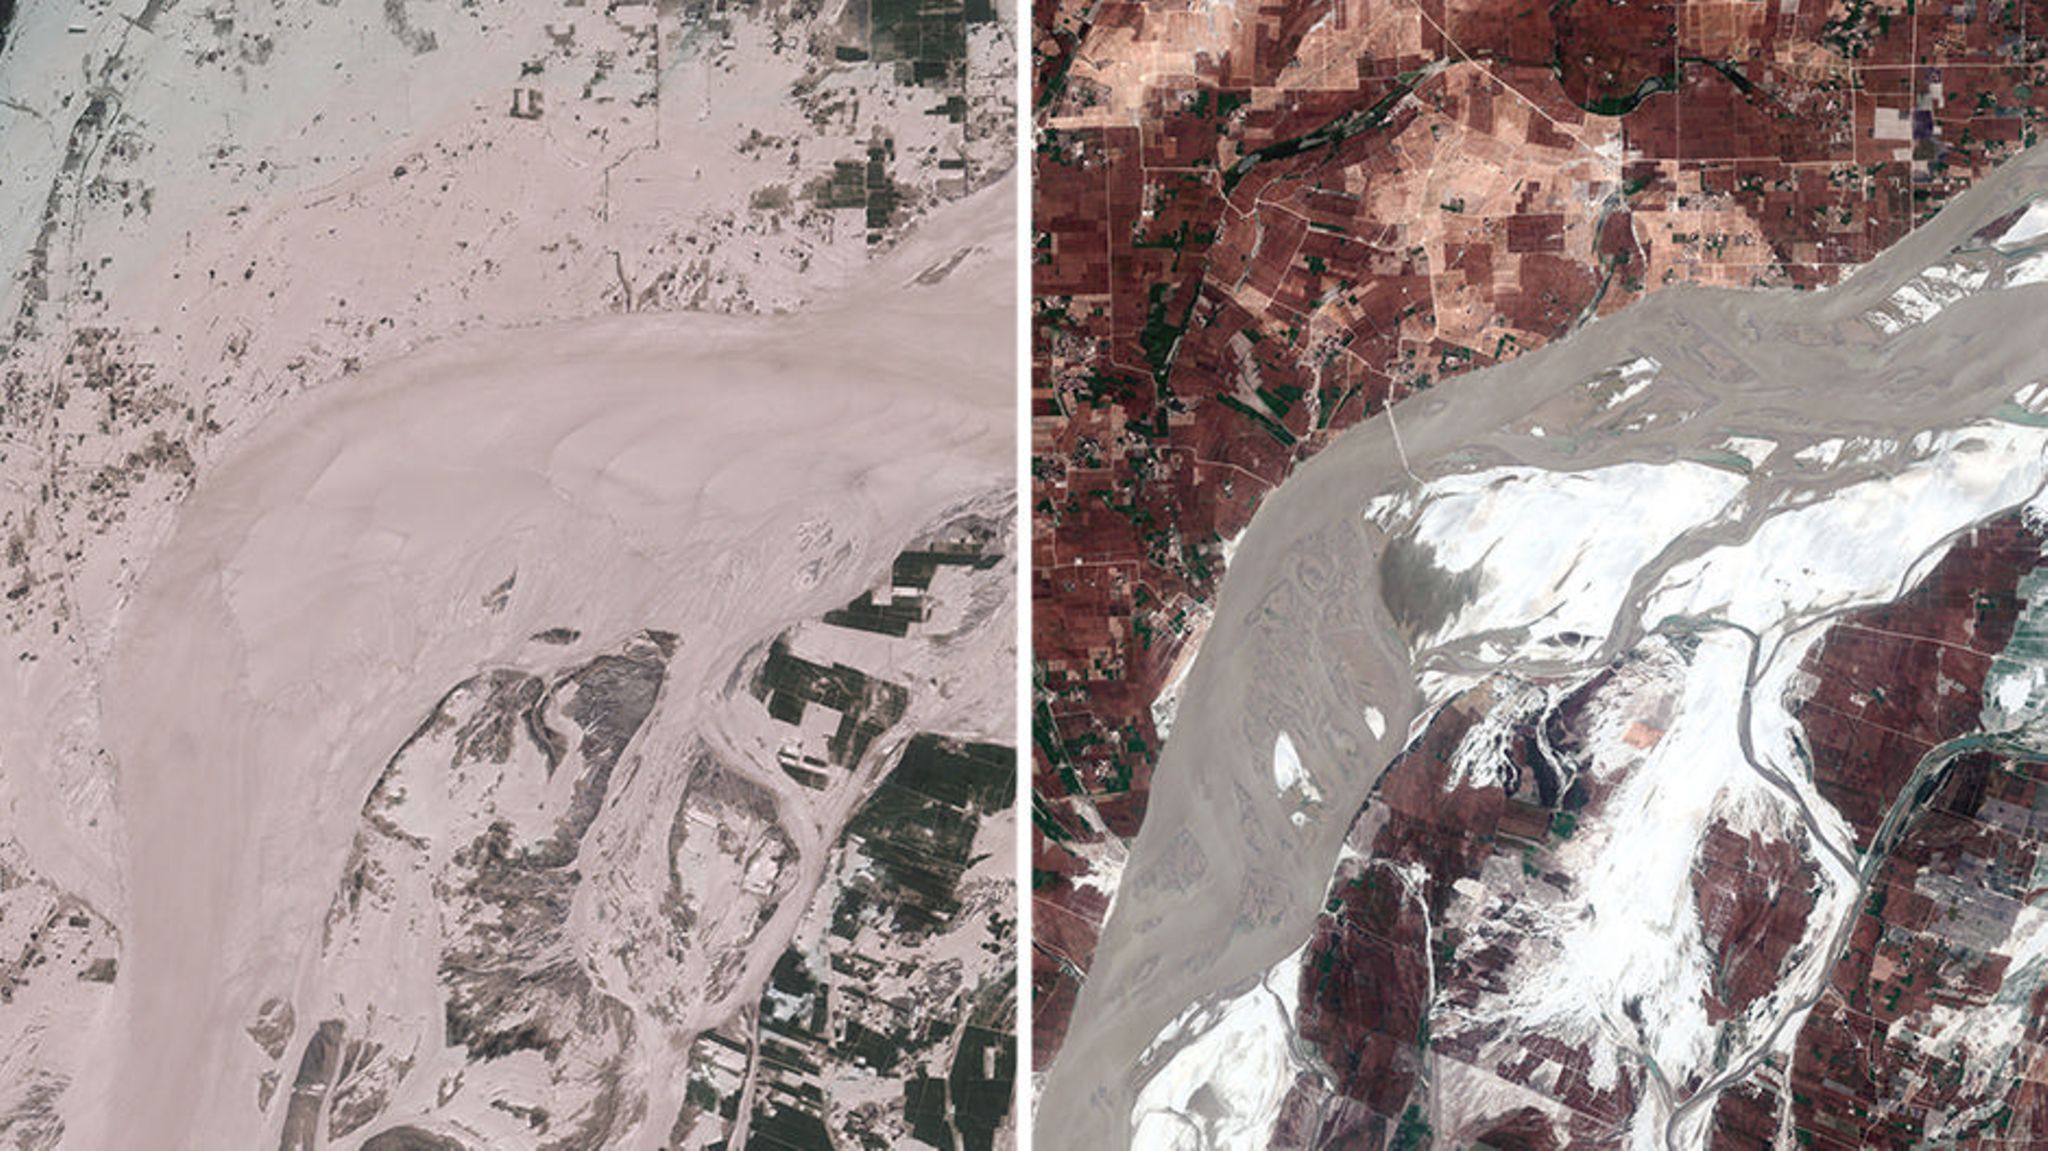 Pakistan versinkt im Hochwasser Satellitenbilder zeigen Ausmaß der Flut STERN.de